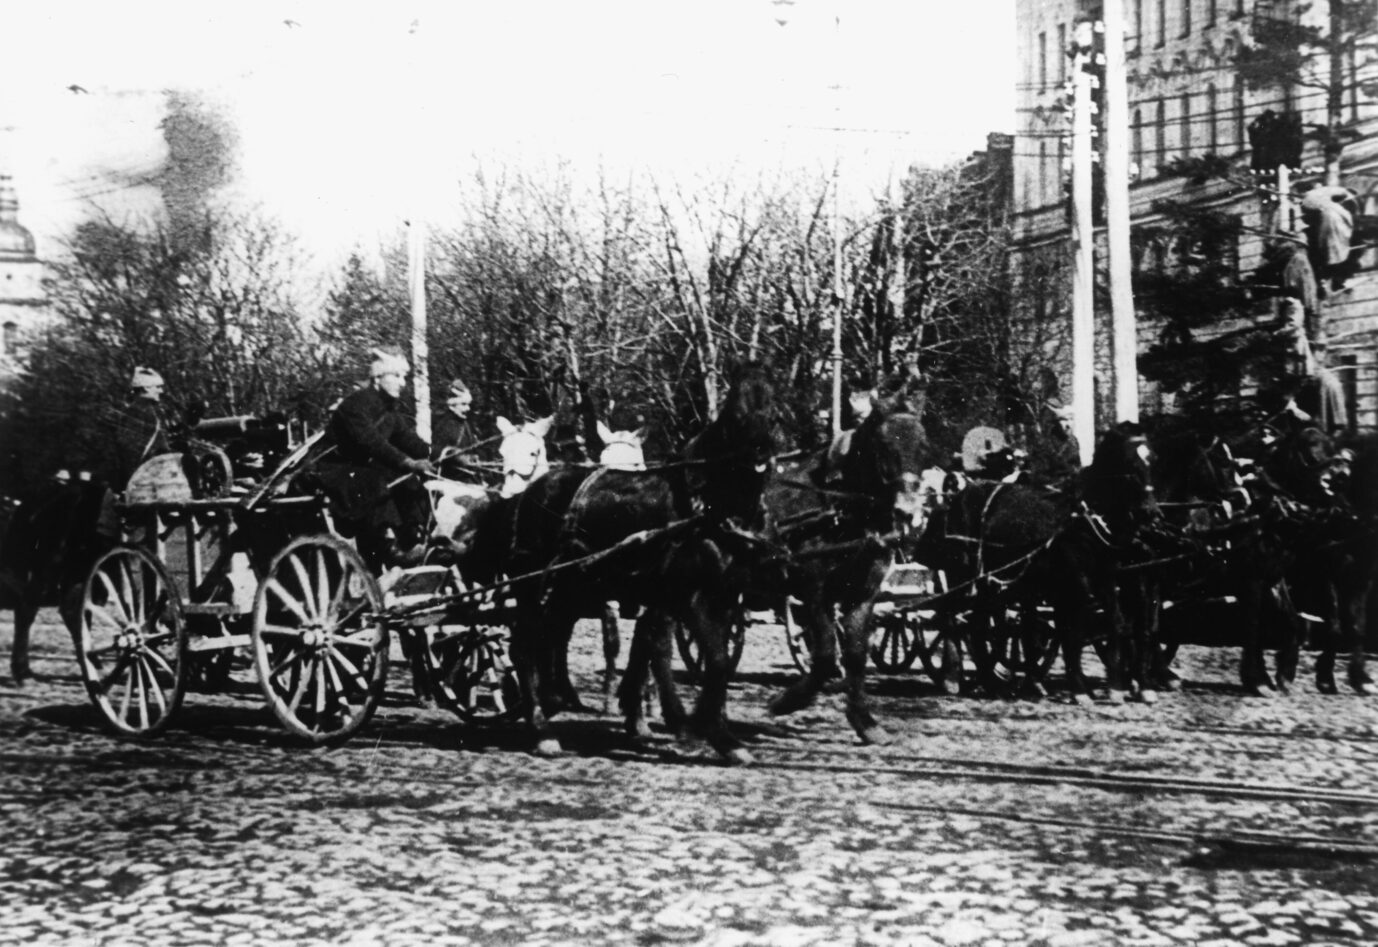 Rote Armee in Kiew Juni 1920